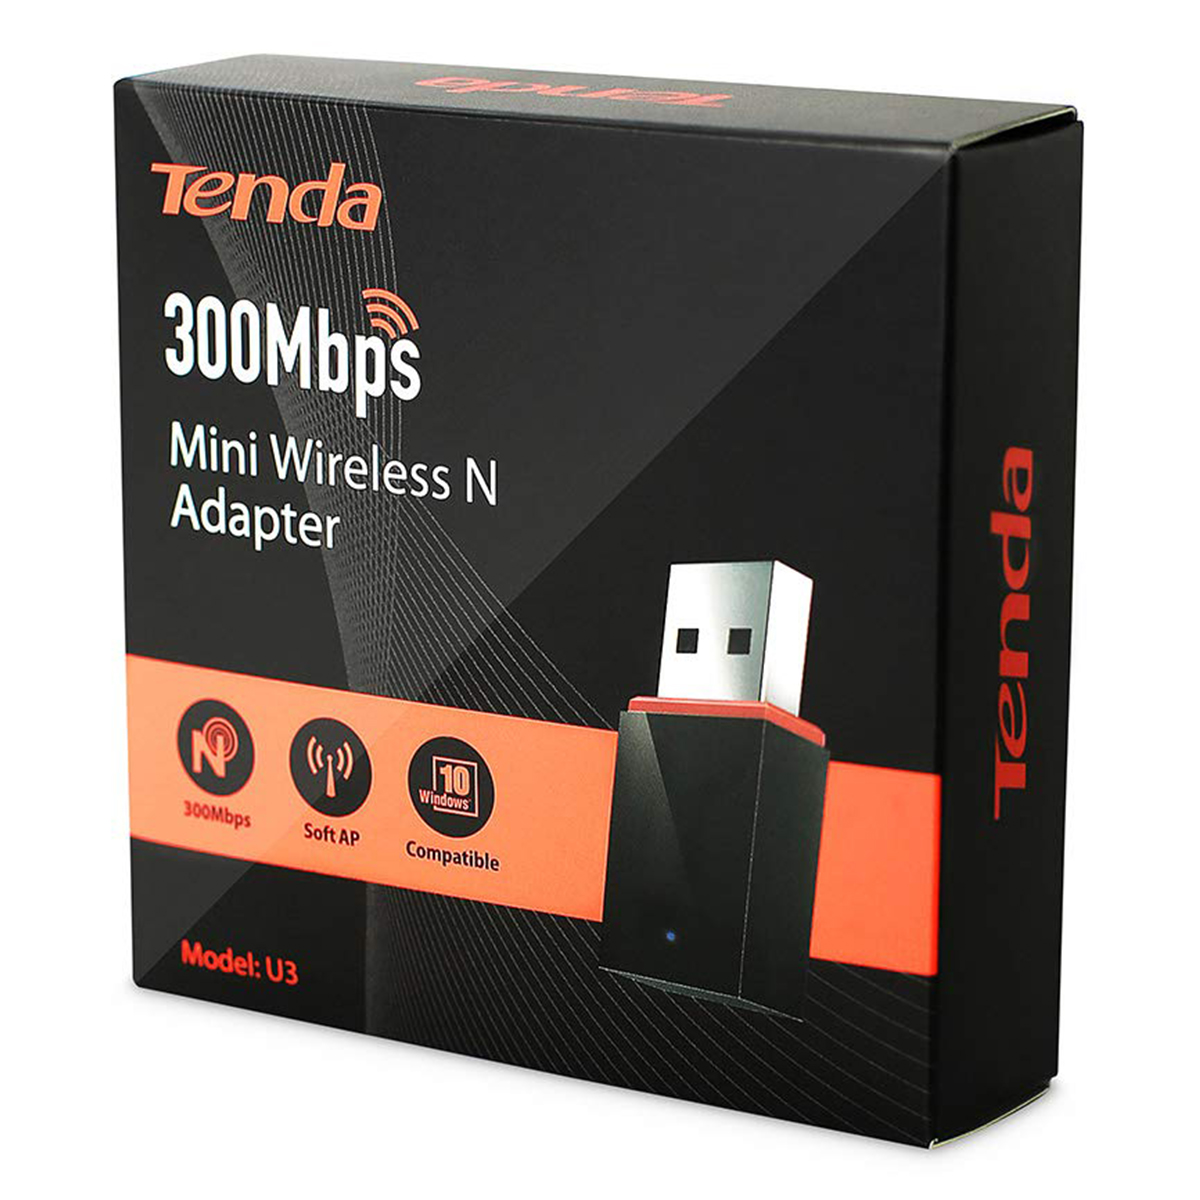 TENDA TE-U3 USB WIFI 300MBPS DVR SUPPORTED (3YEAR)